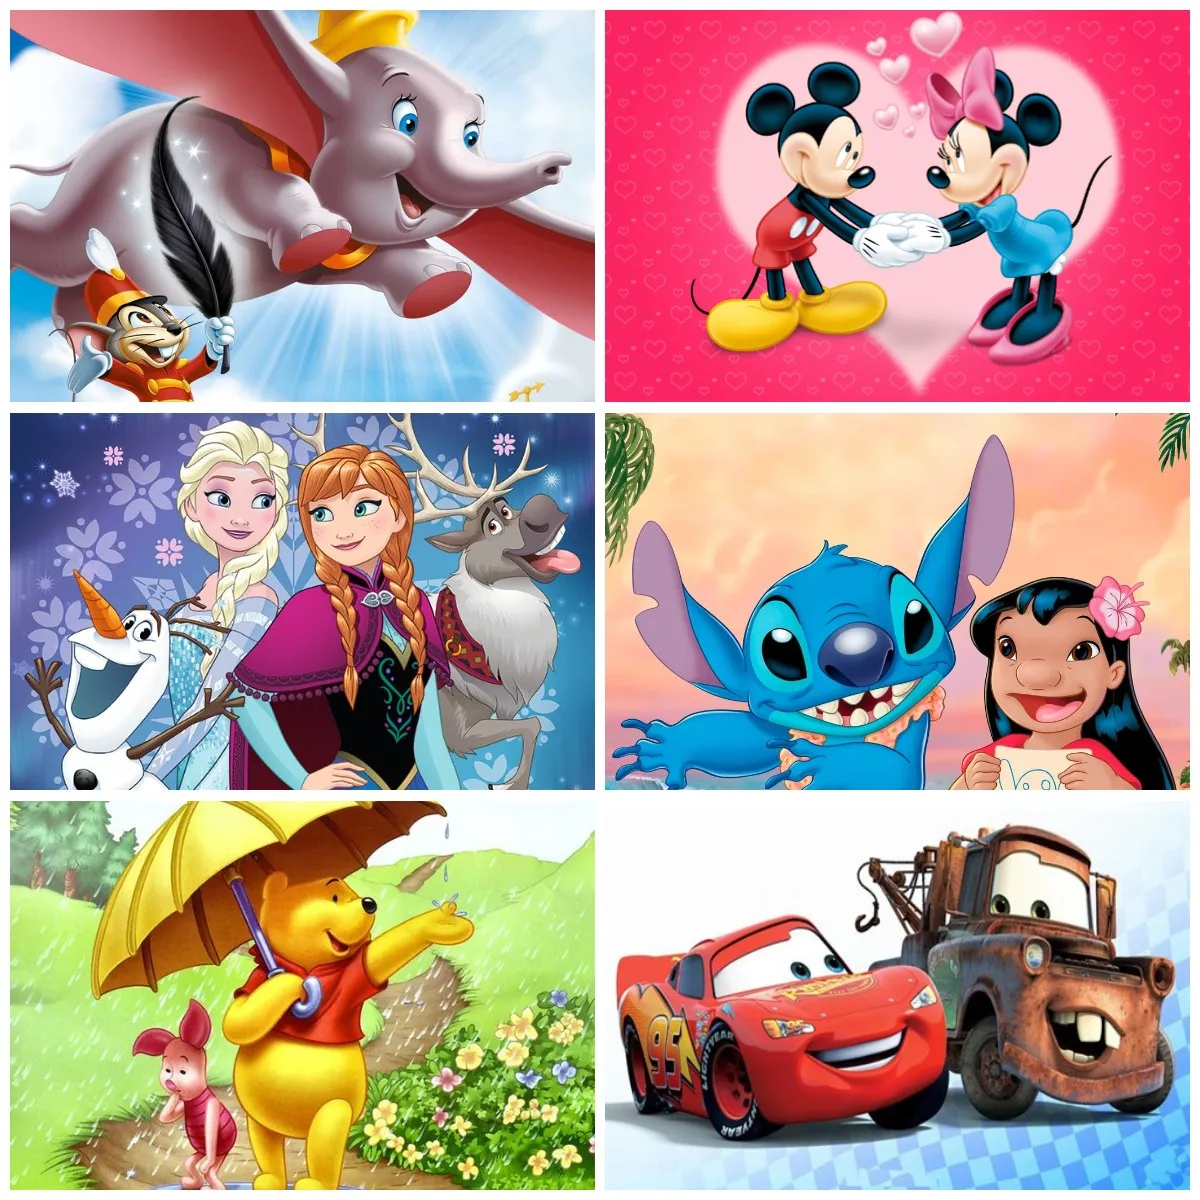 

Алмазная 5D картина «сделай сам» Disney, мультяшная Мозаика из страз, принцесса Лило, Лев, король, Микки Маус, вышивка крестиком, для дома